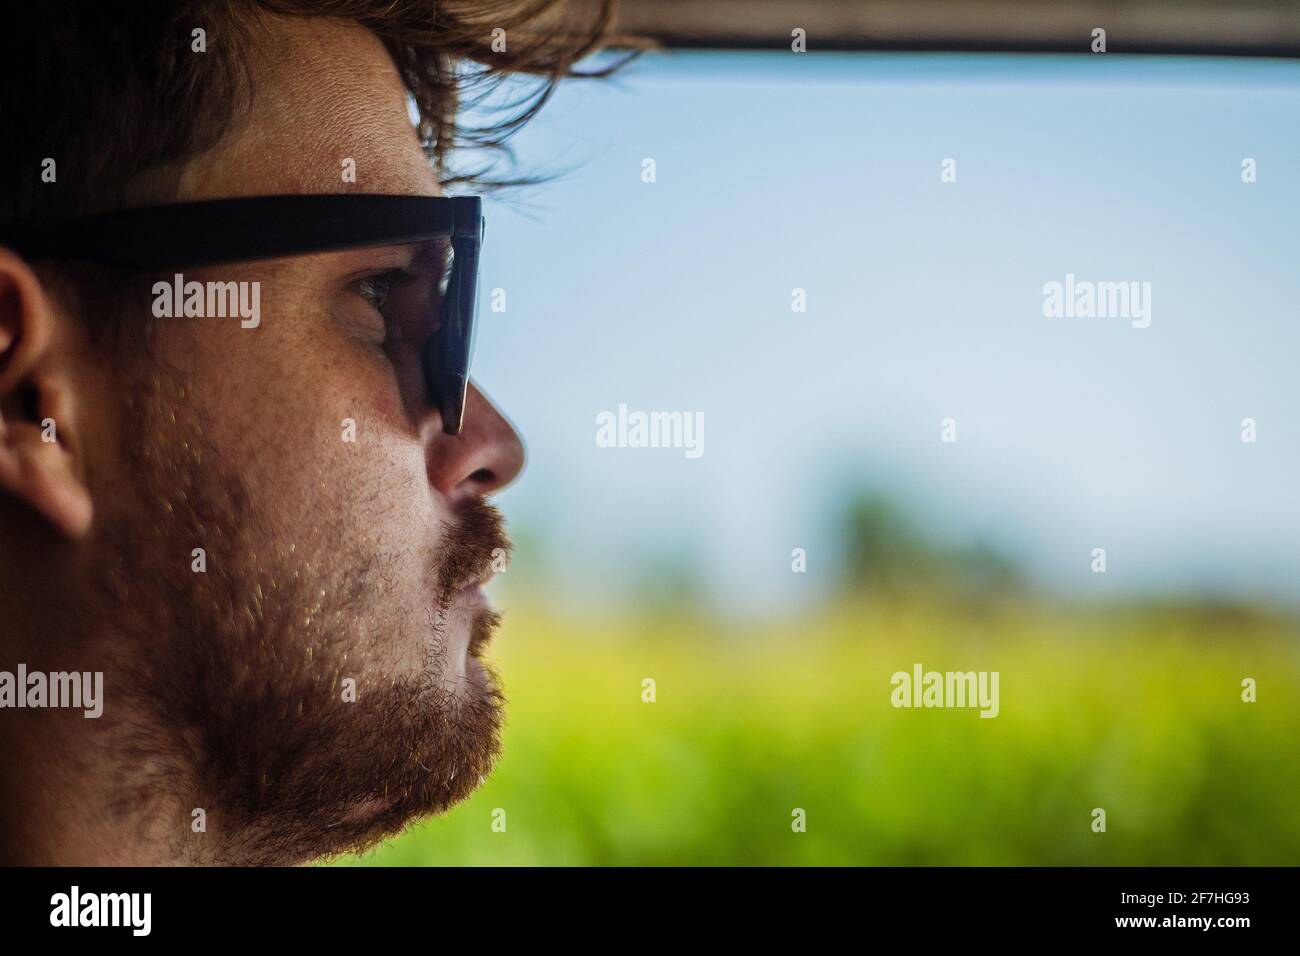 Seiten- oder Profilbild eines jungen Mannes, der mit offenem Fenster ein Auto fährt und die grünen Felder und den blauen Himmel freilegt. Vintage-Effekt-Bild mit ret Stockfoto